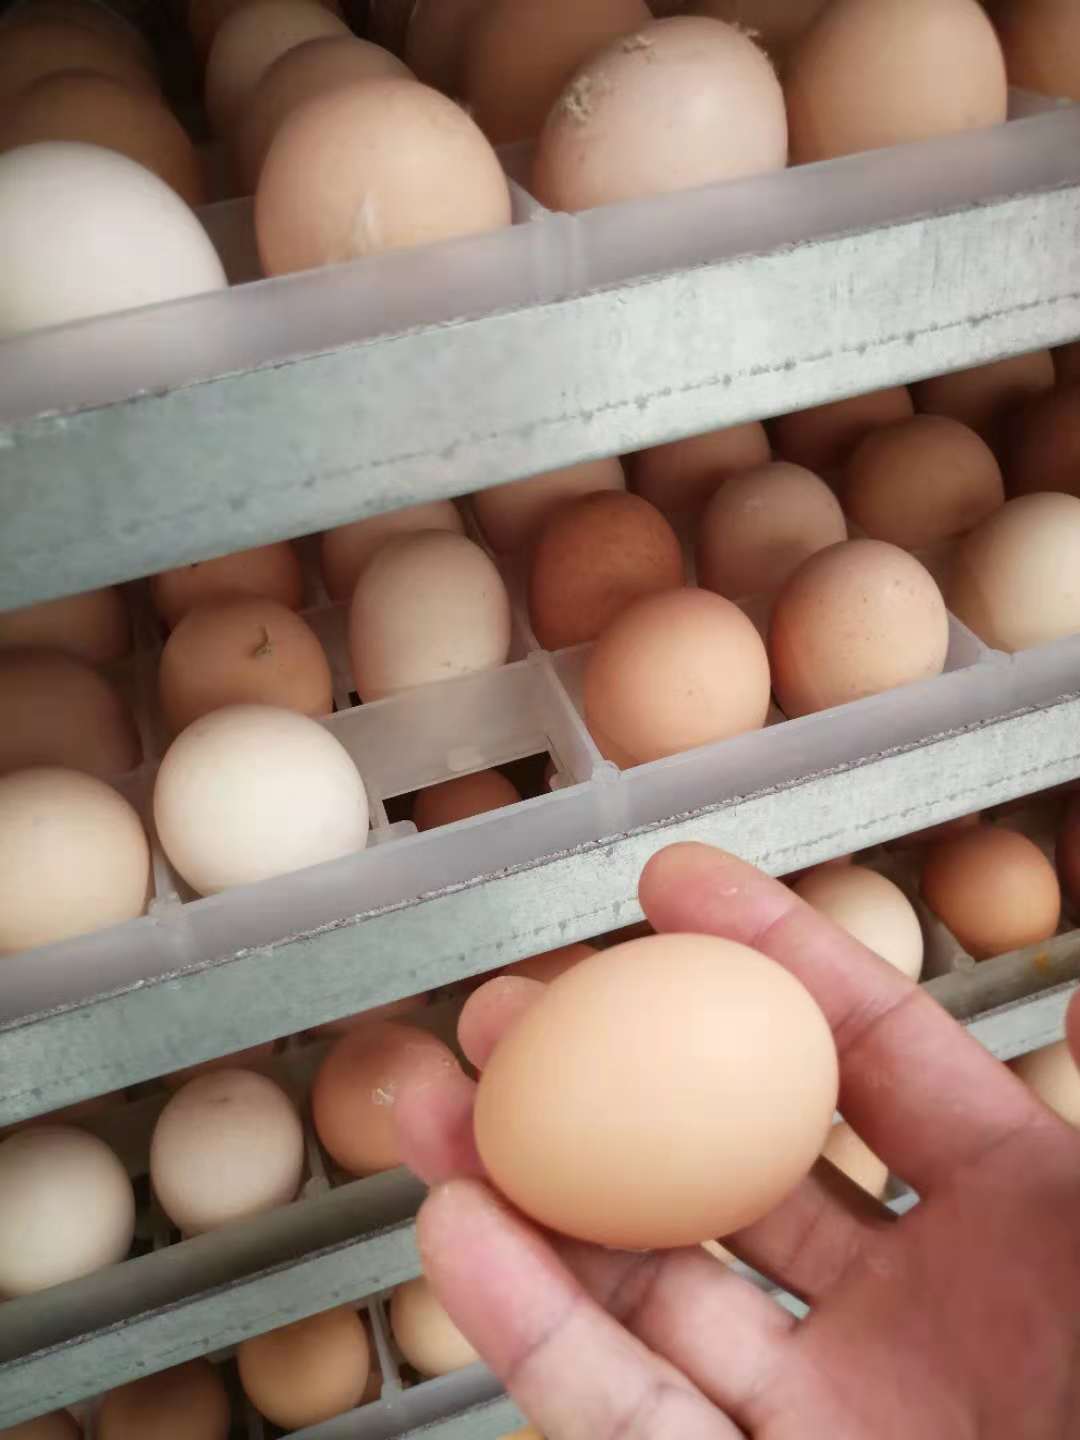 种蛋 皖南种蛋厂家 皖南种鸡蛋报价 皖南种鸡蛋 皖南土鸡蛋批发 皖南土鸡蛋供应商 皖南种蛋直销 皖南种蛋价格 种蛋供应商